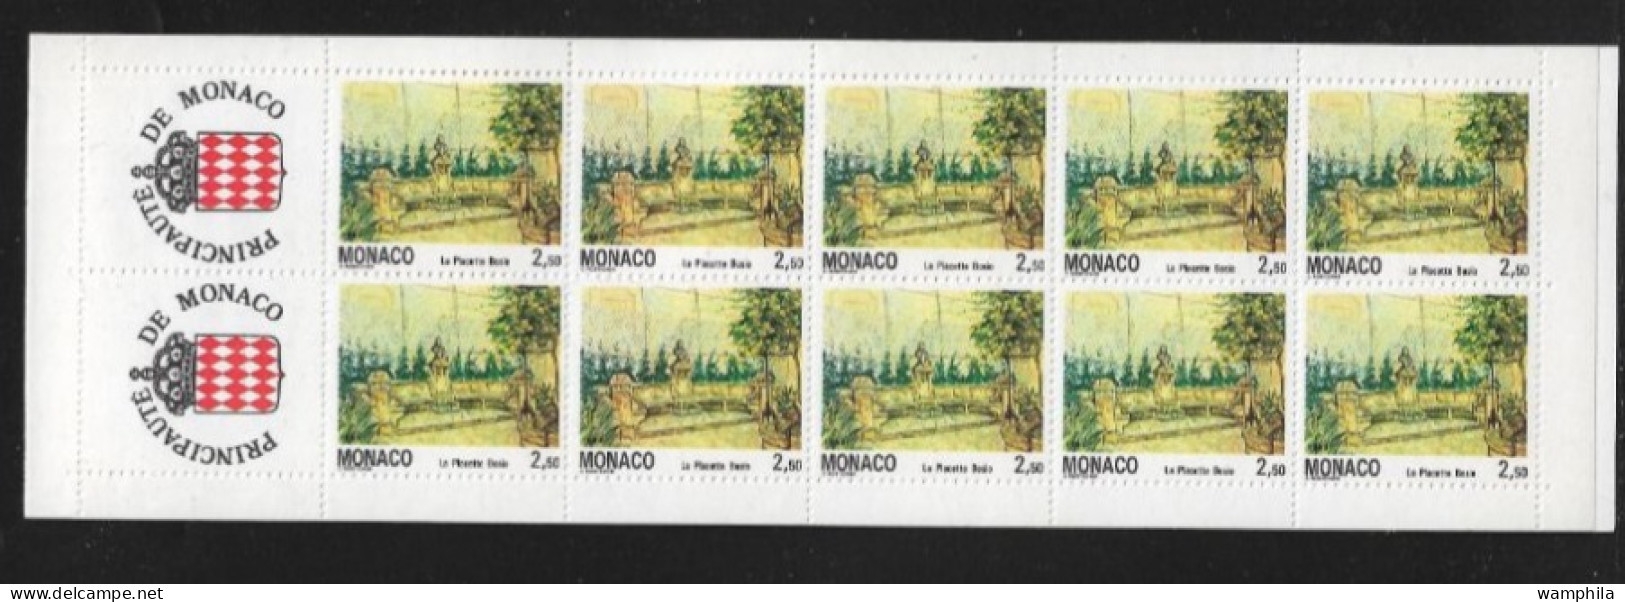 Monaco 1992. Carnet N°8, N°1833 Vues Du Vieux Monaco-ville. - Postzegelboekjes